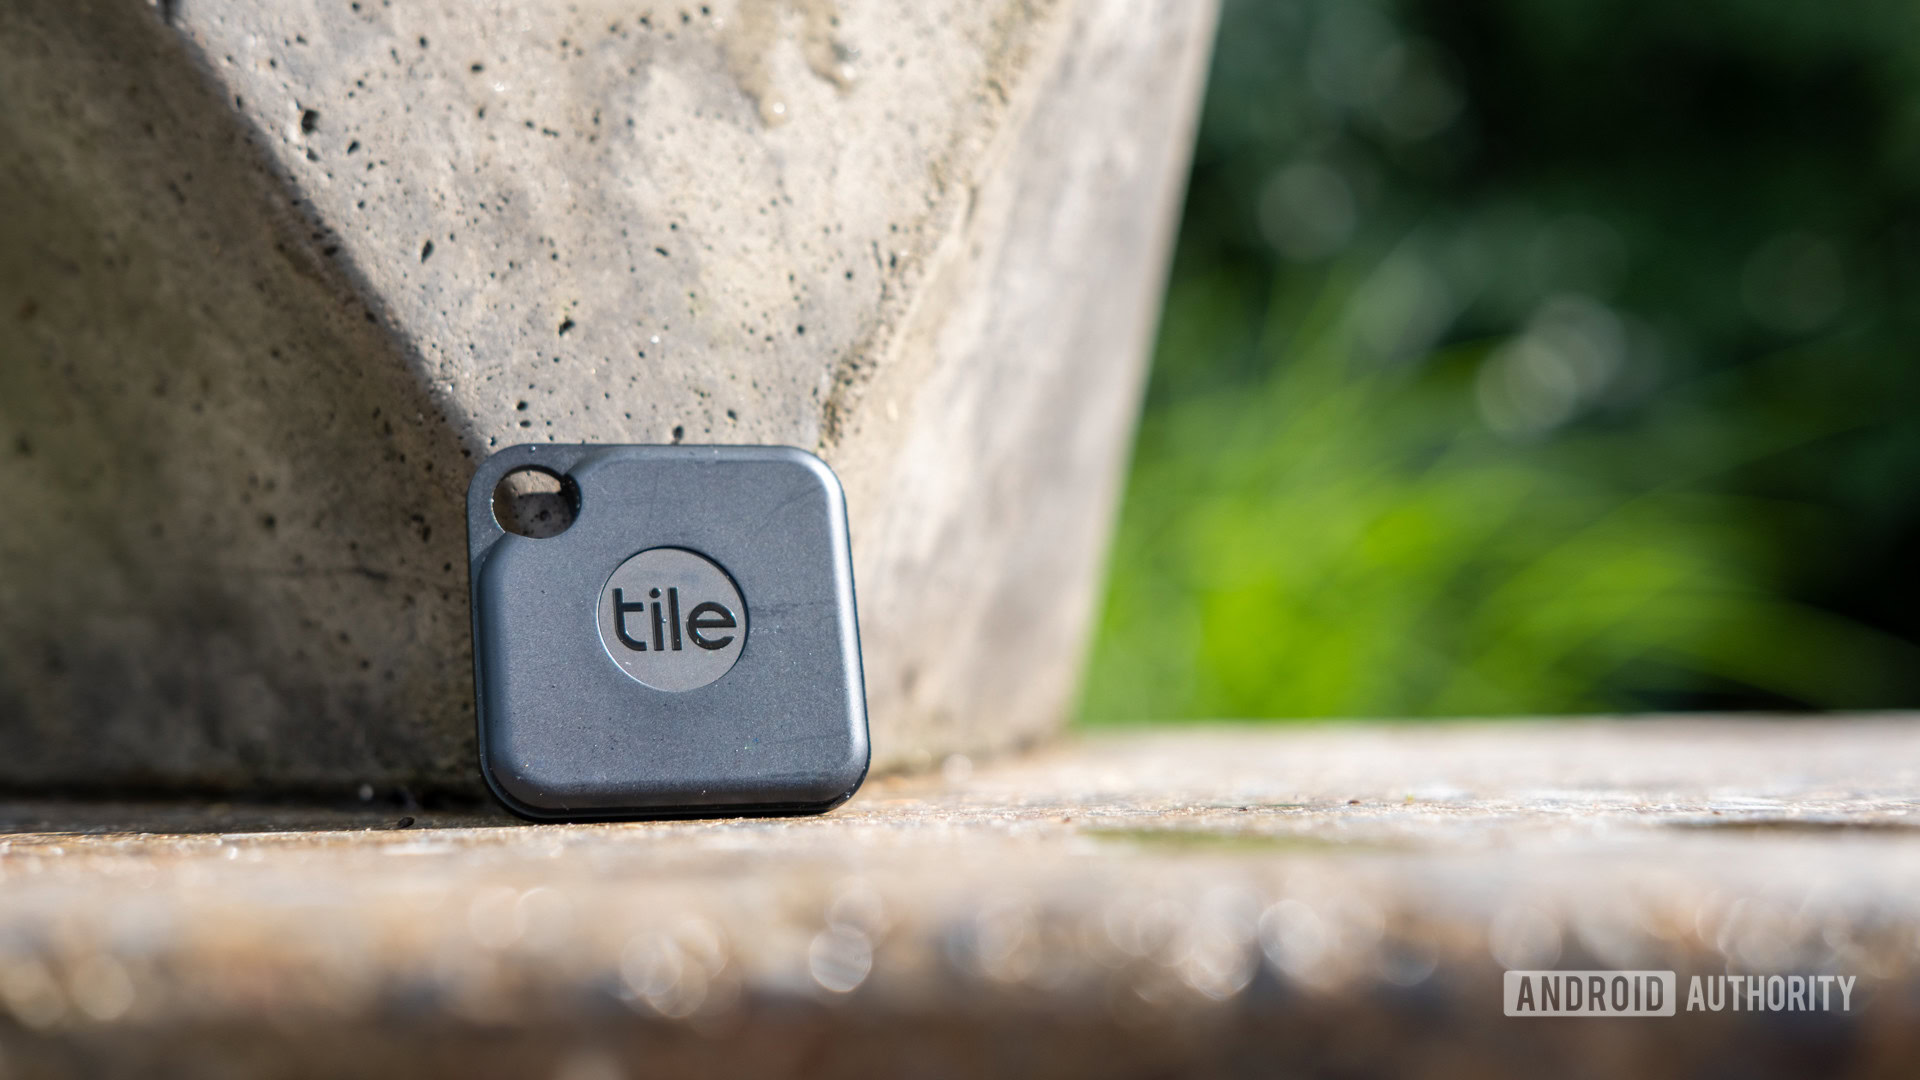 Imagem do Tile Pro em uma bancada de cimento